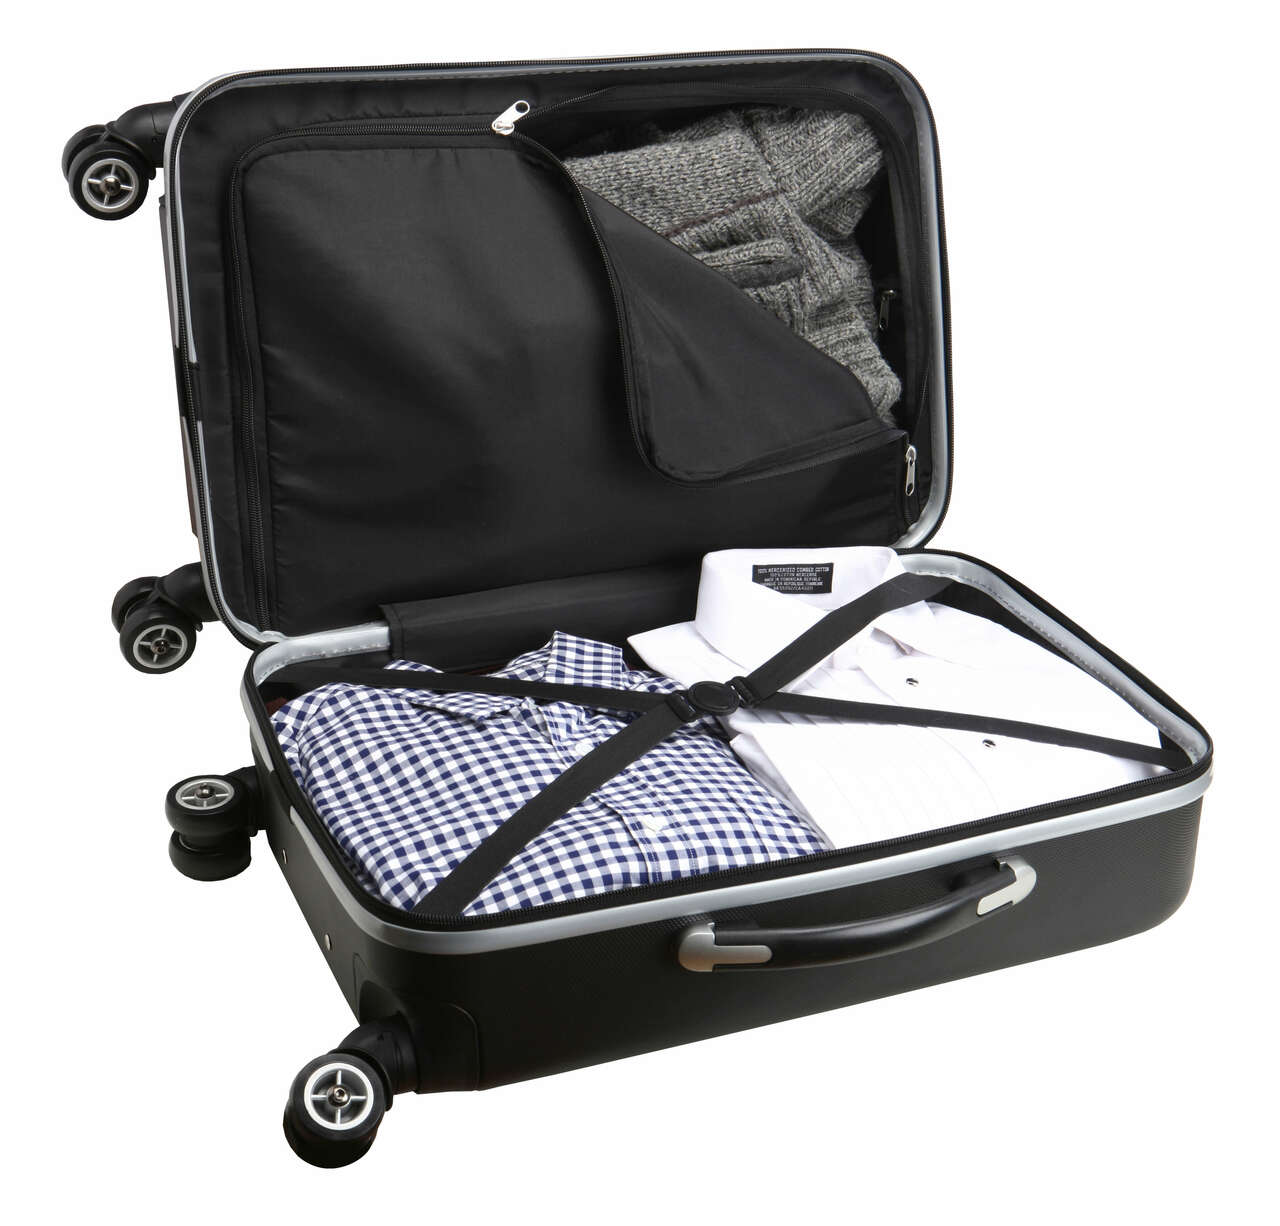 Orlando Magic 20" Hardcase Luggage Carry-on Spinner